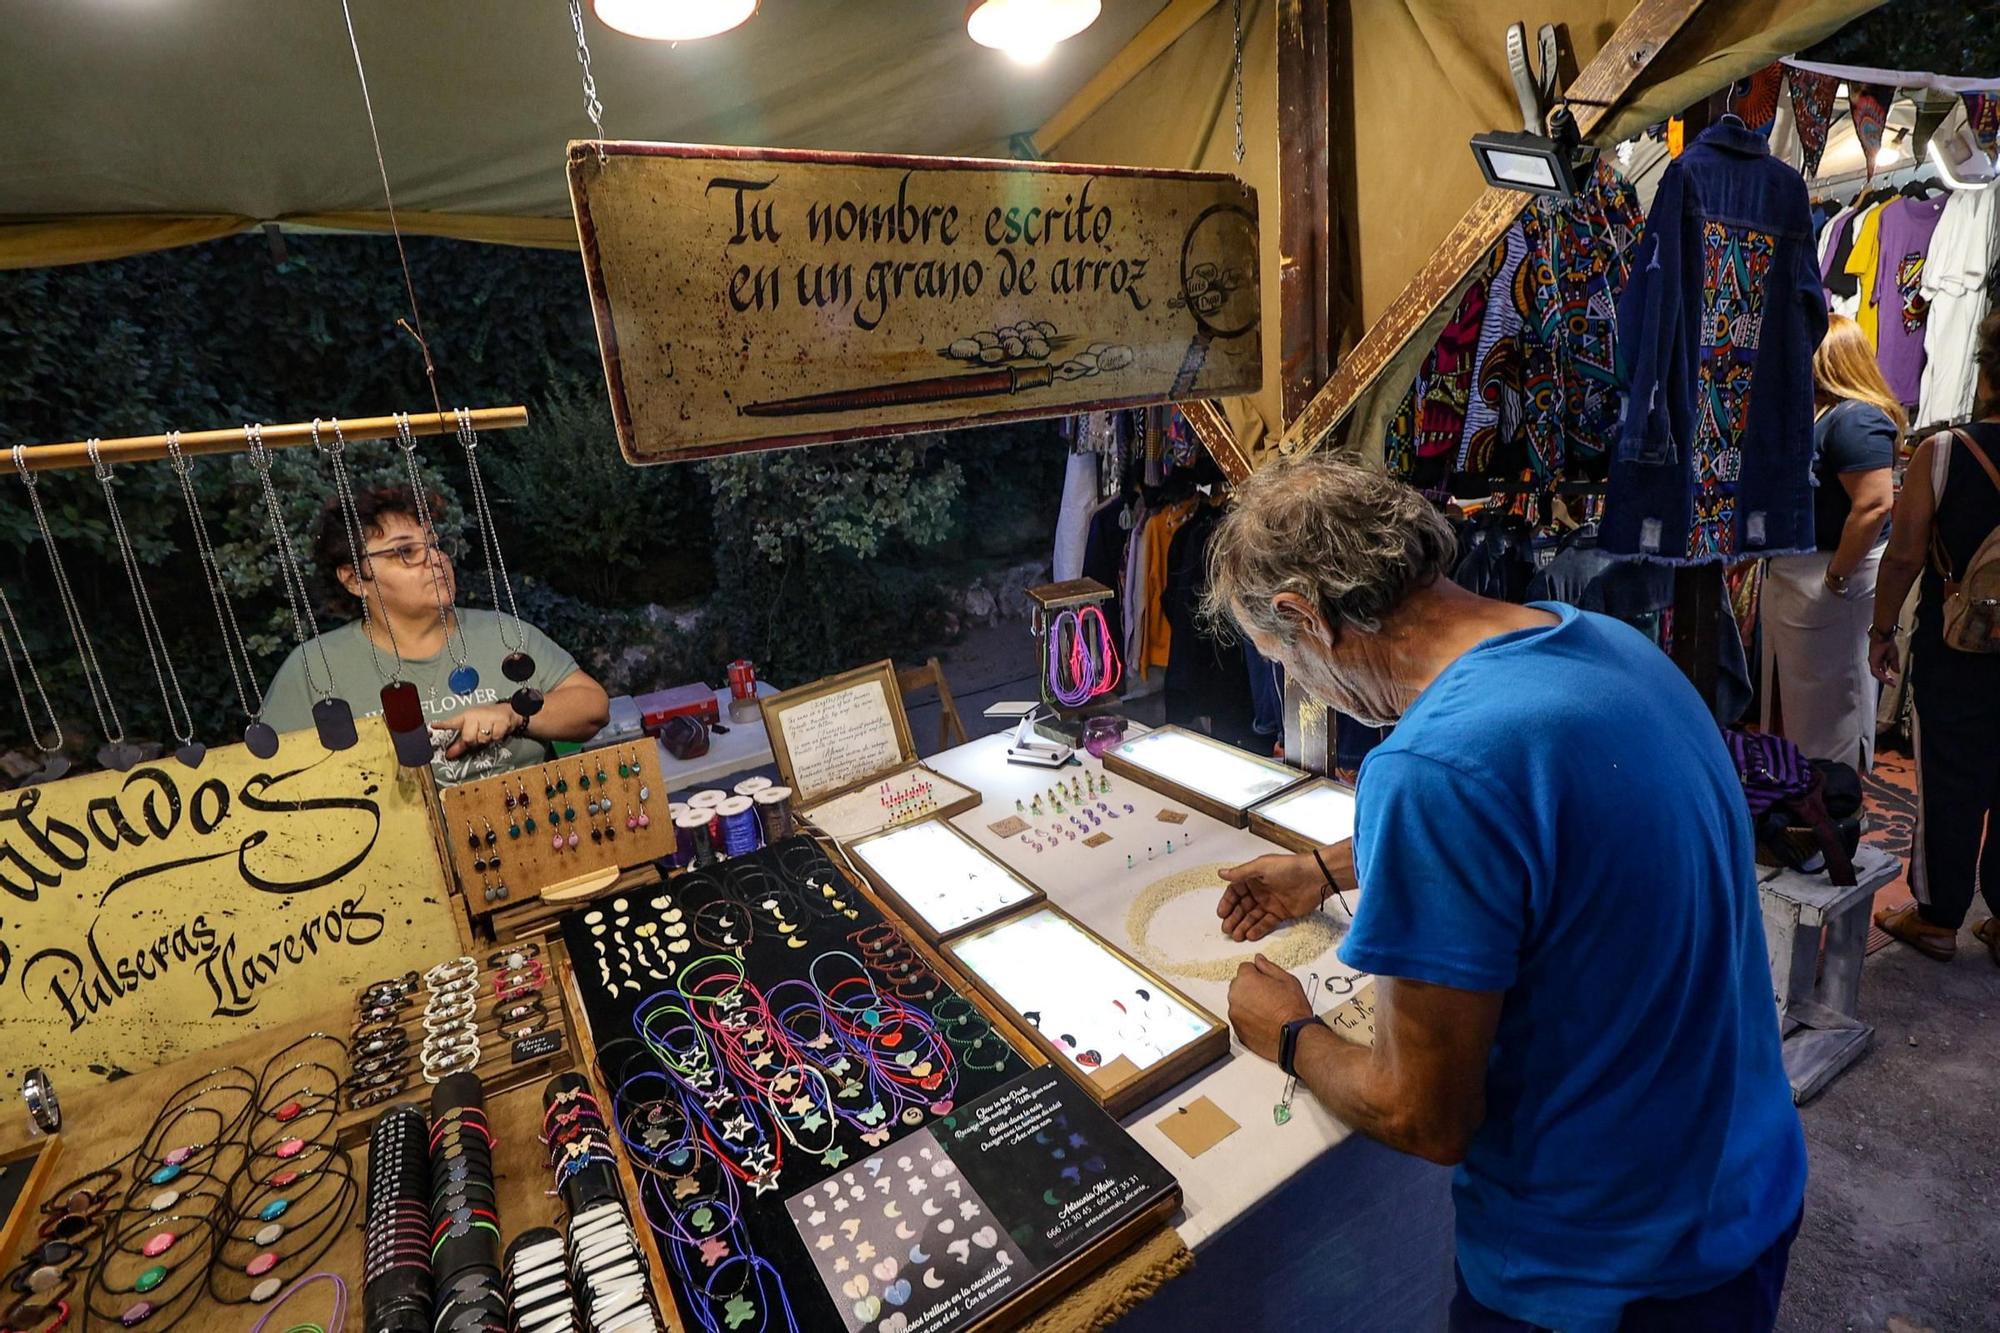 Fira del Llibre y de productos artesanos en el parque de la Glorieta